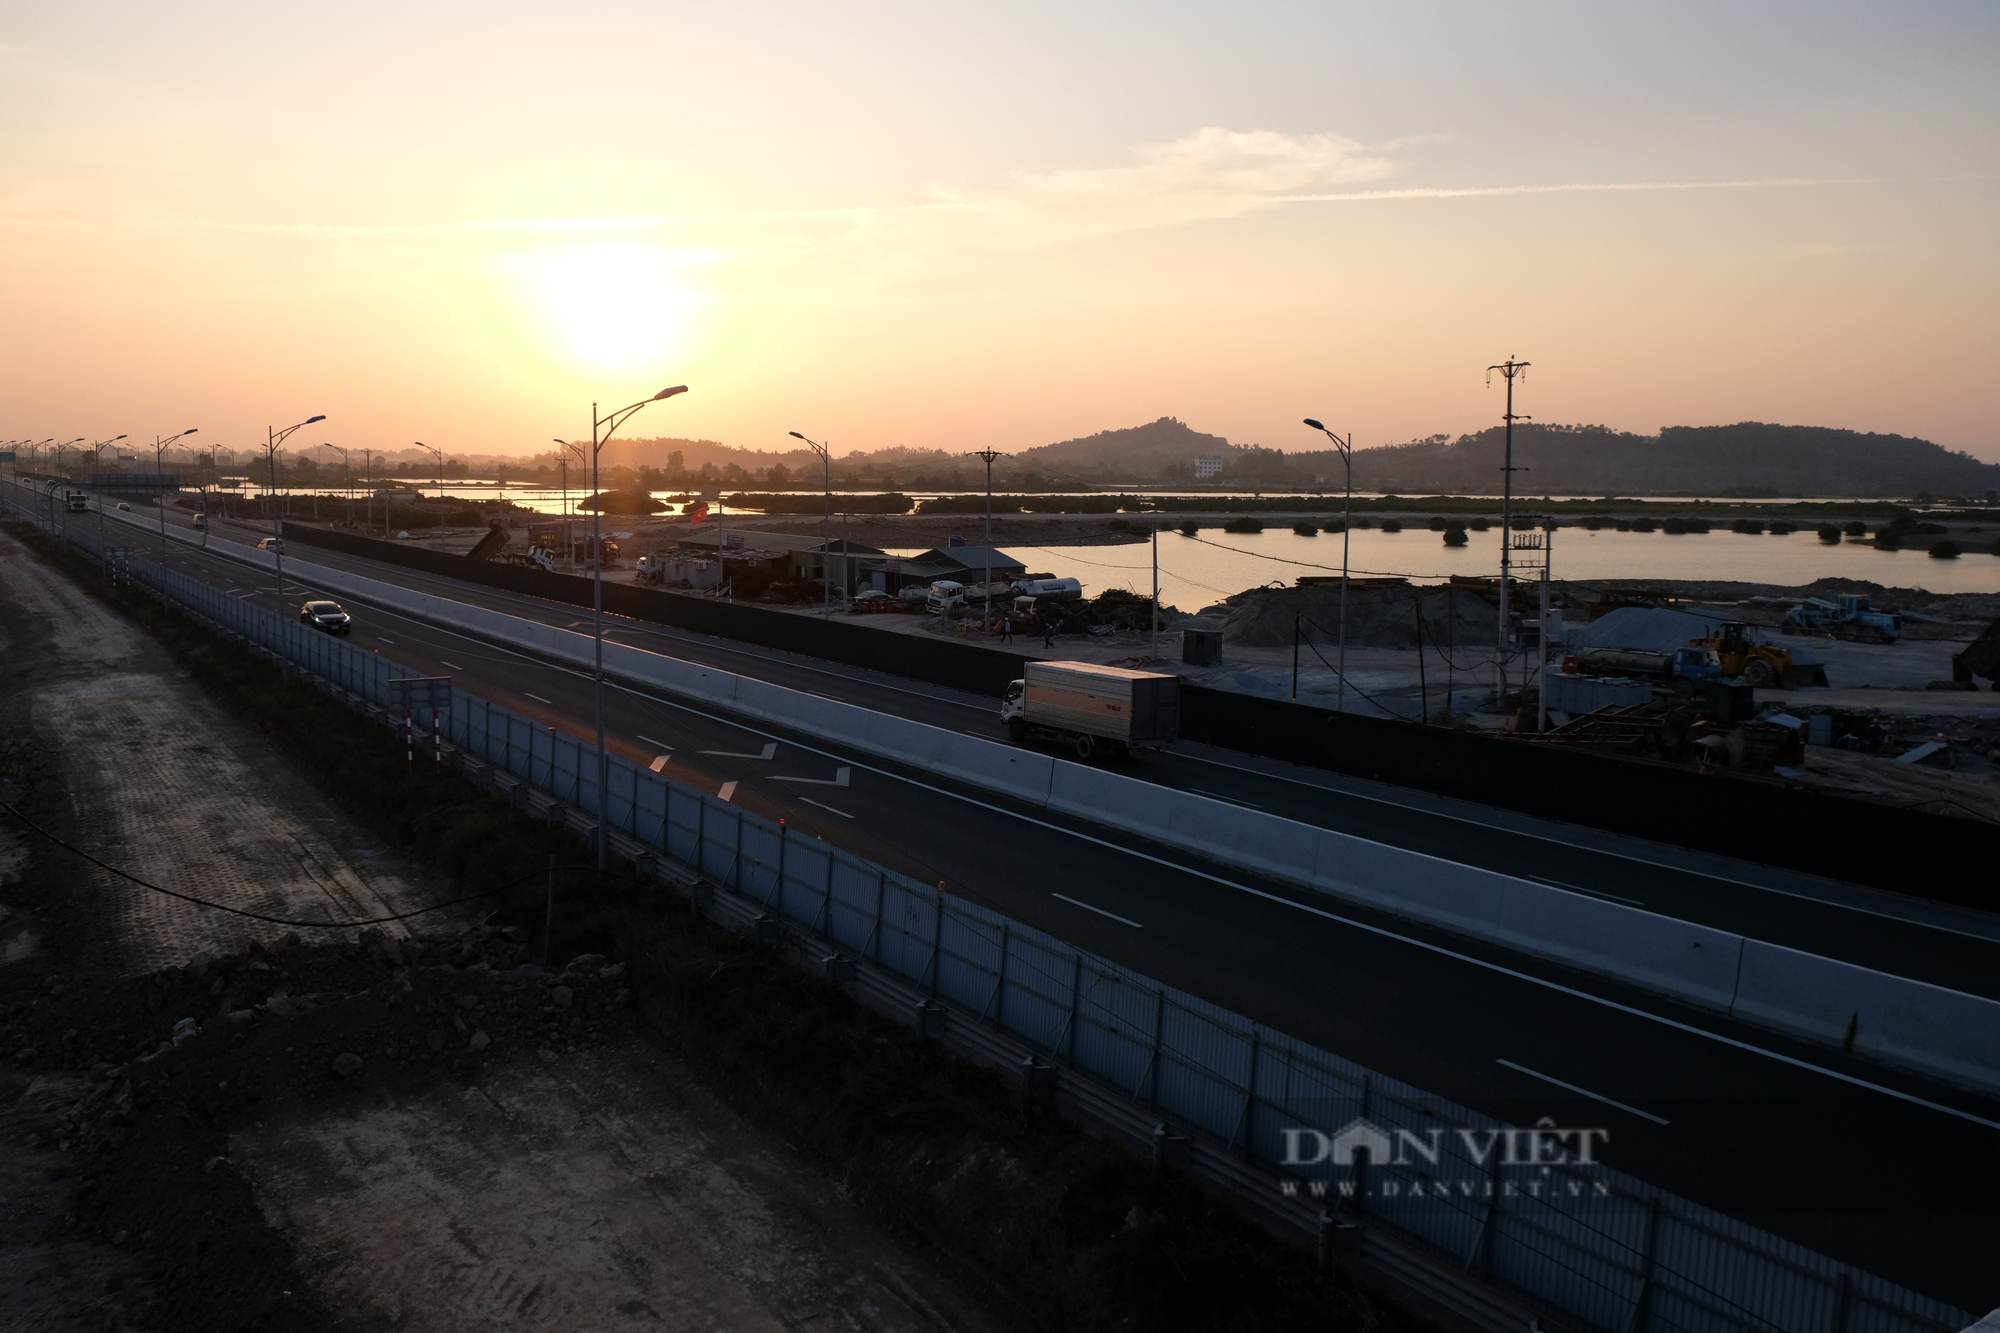 Chiêm ngưỡng hai nút giao thông nghìn tỷ nằm trên cao tốc Hạ Long - Hải Phòng đang được xây dựng - Ảnh 11.